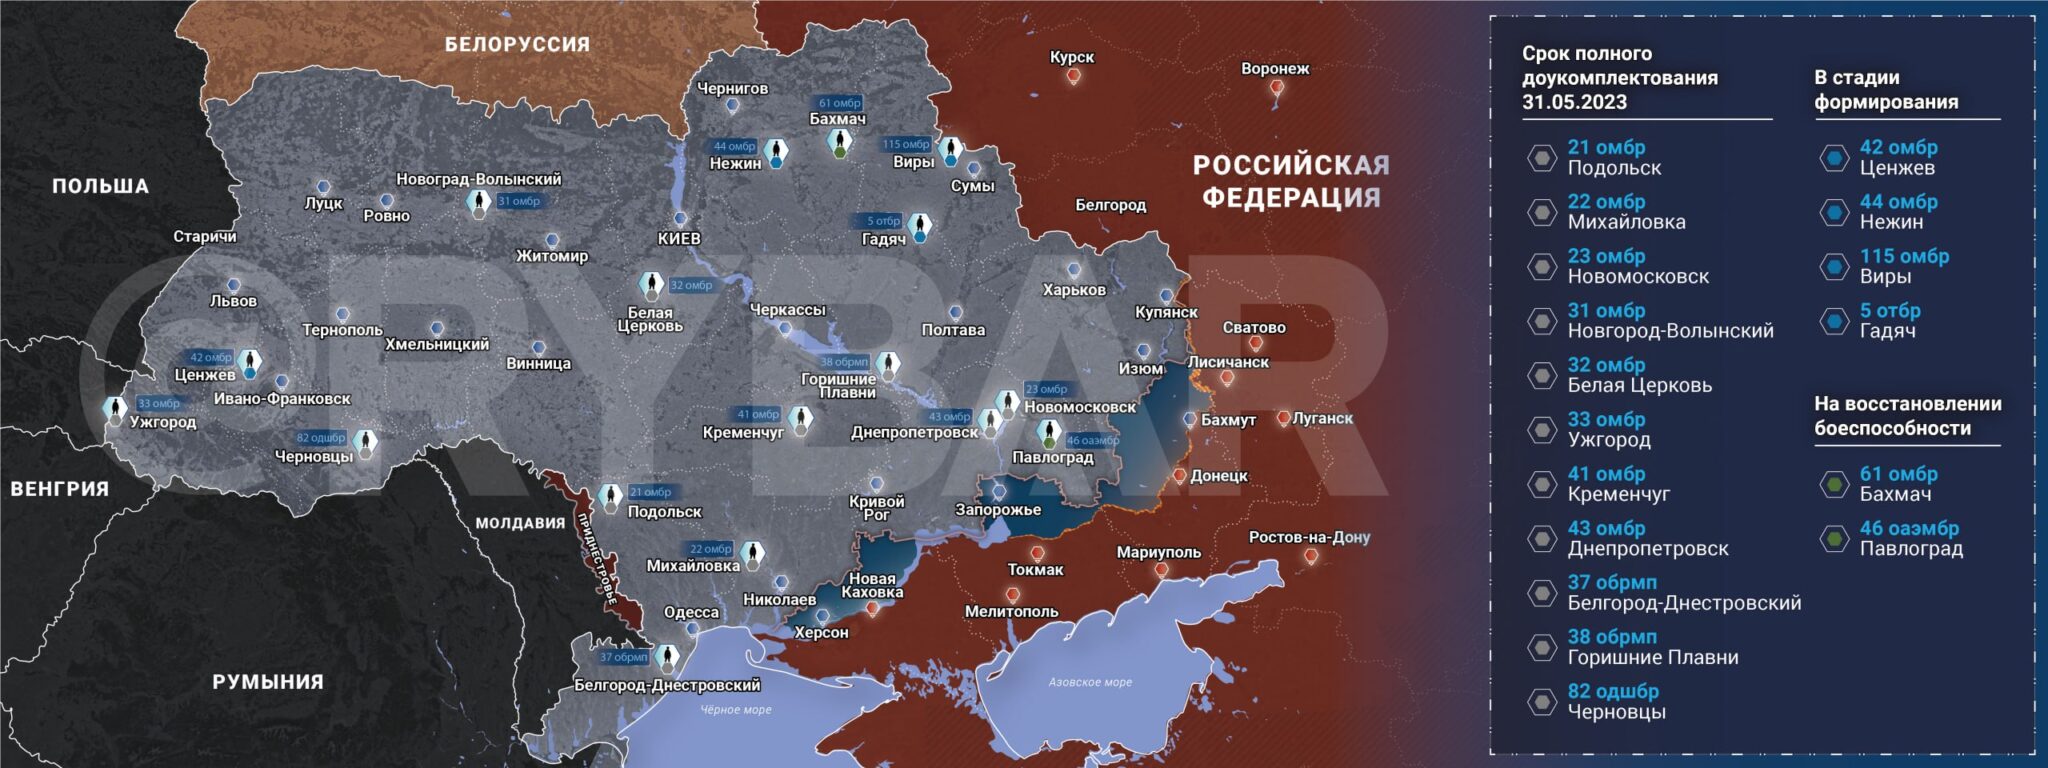 Военные каналы на украине телеграмм фото 20